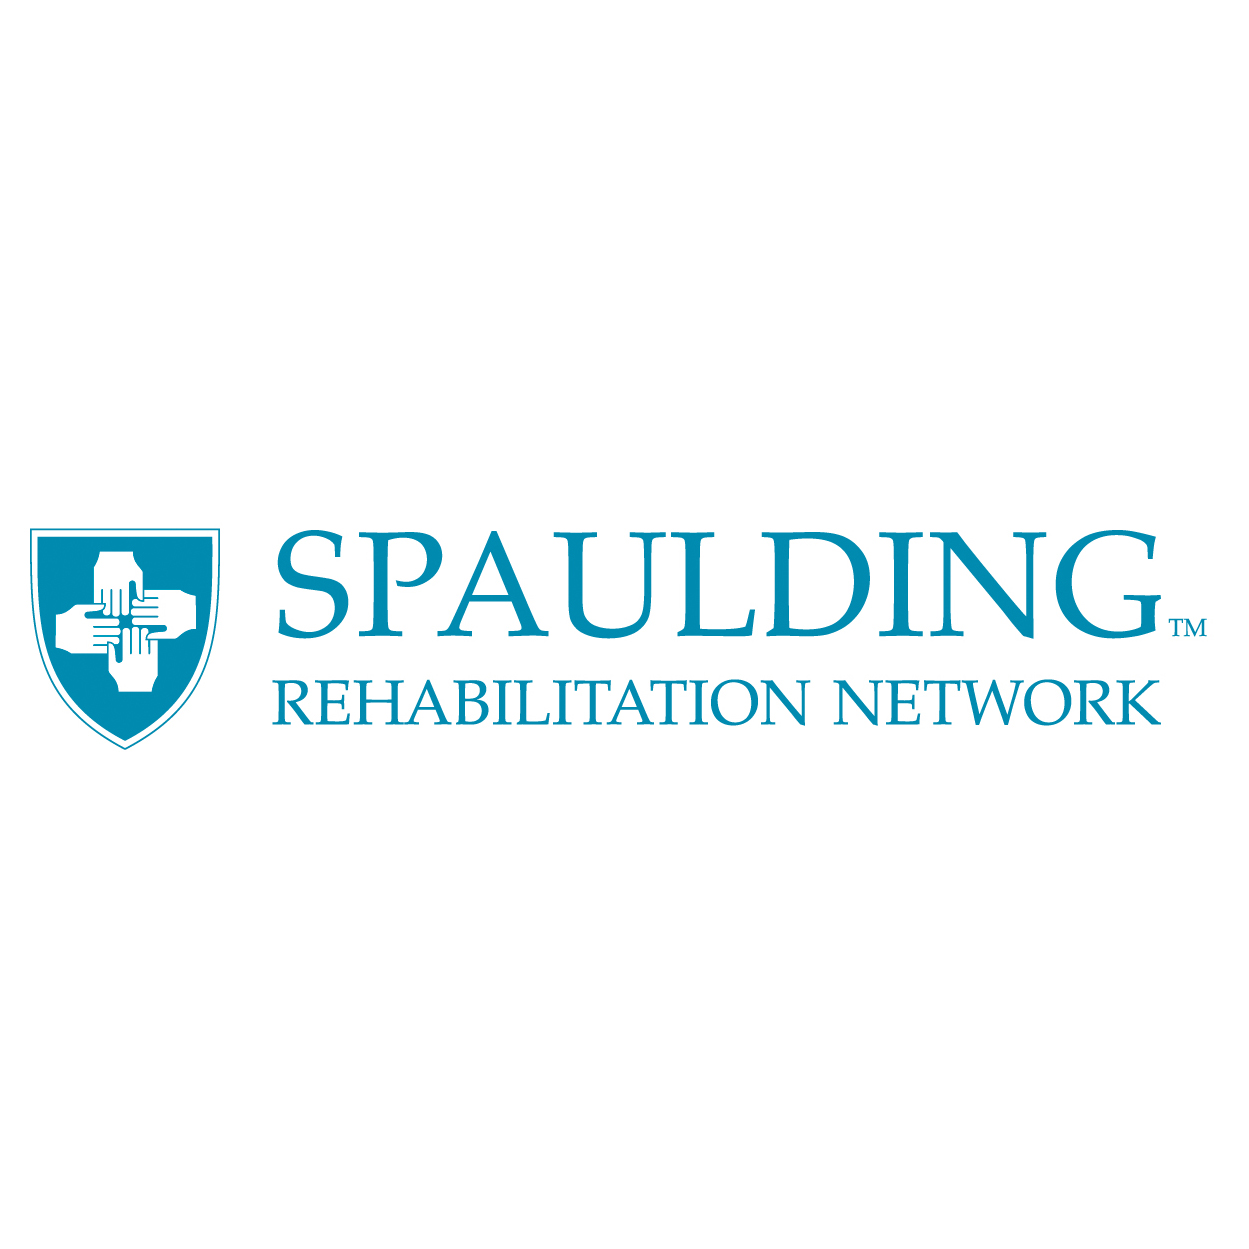 Spaulding Rehabilitation Network website